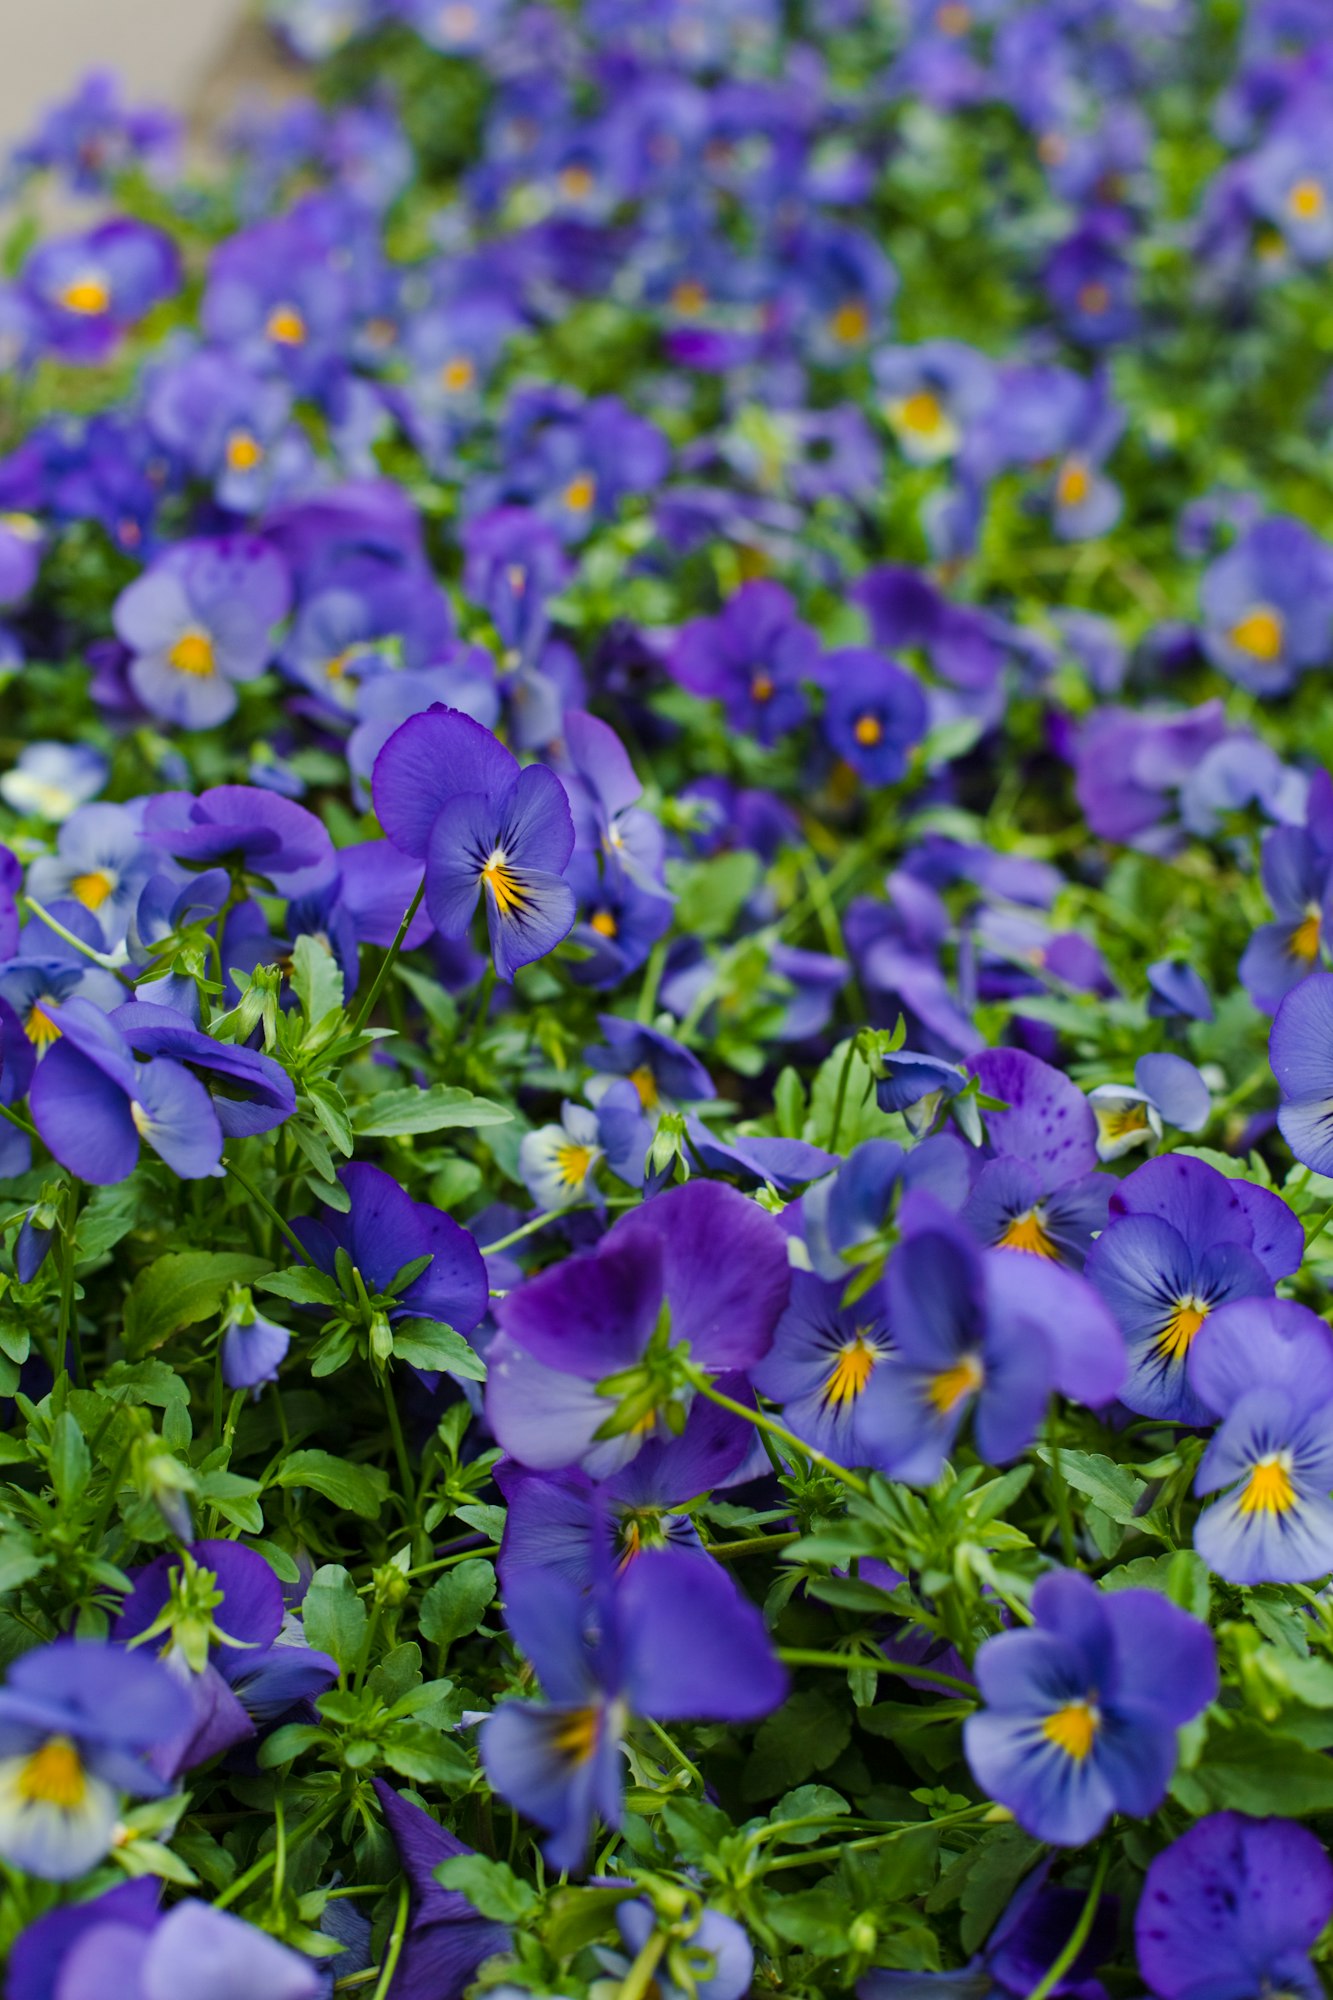 purple pansy flowers in a garden.